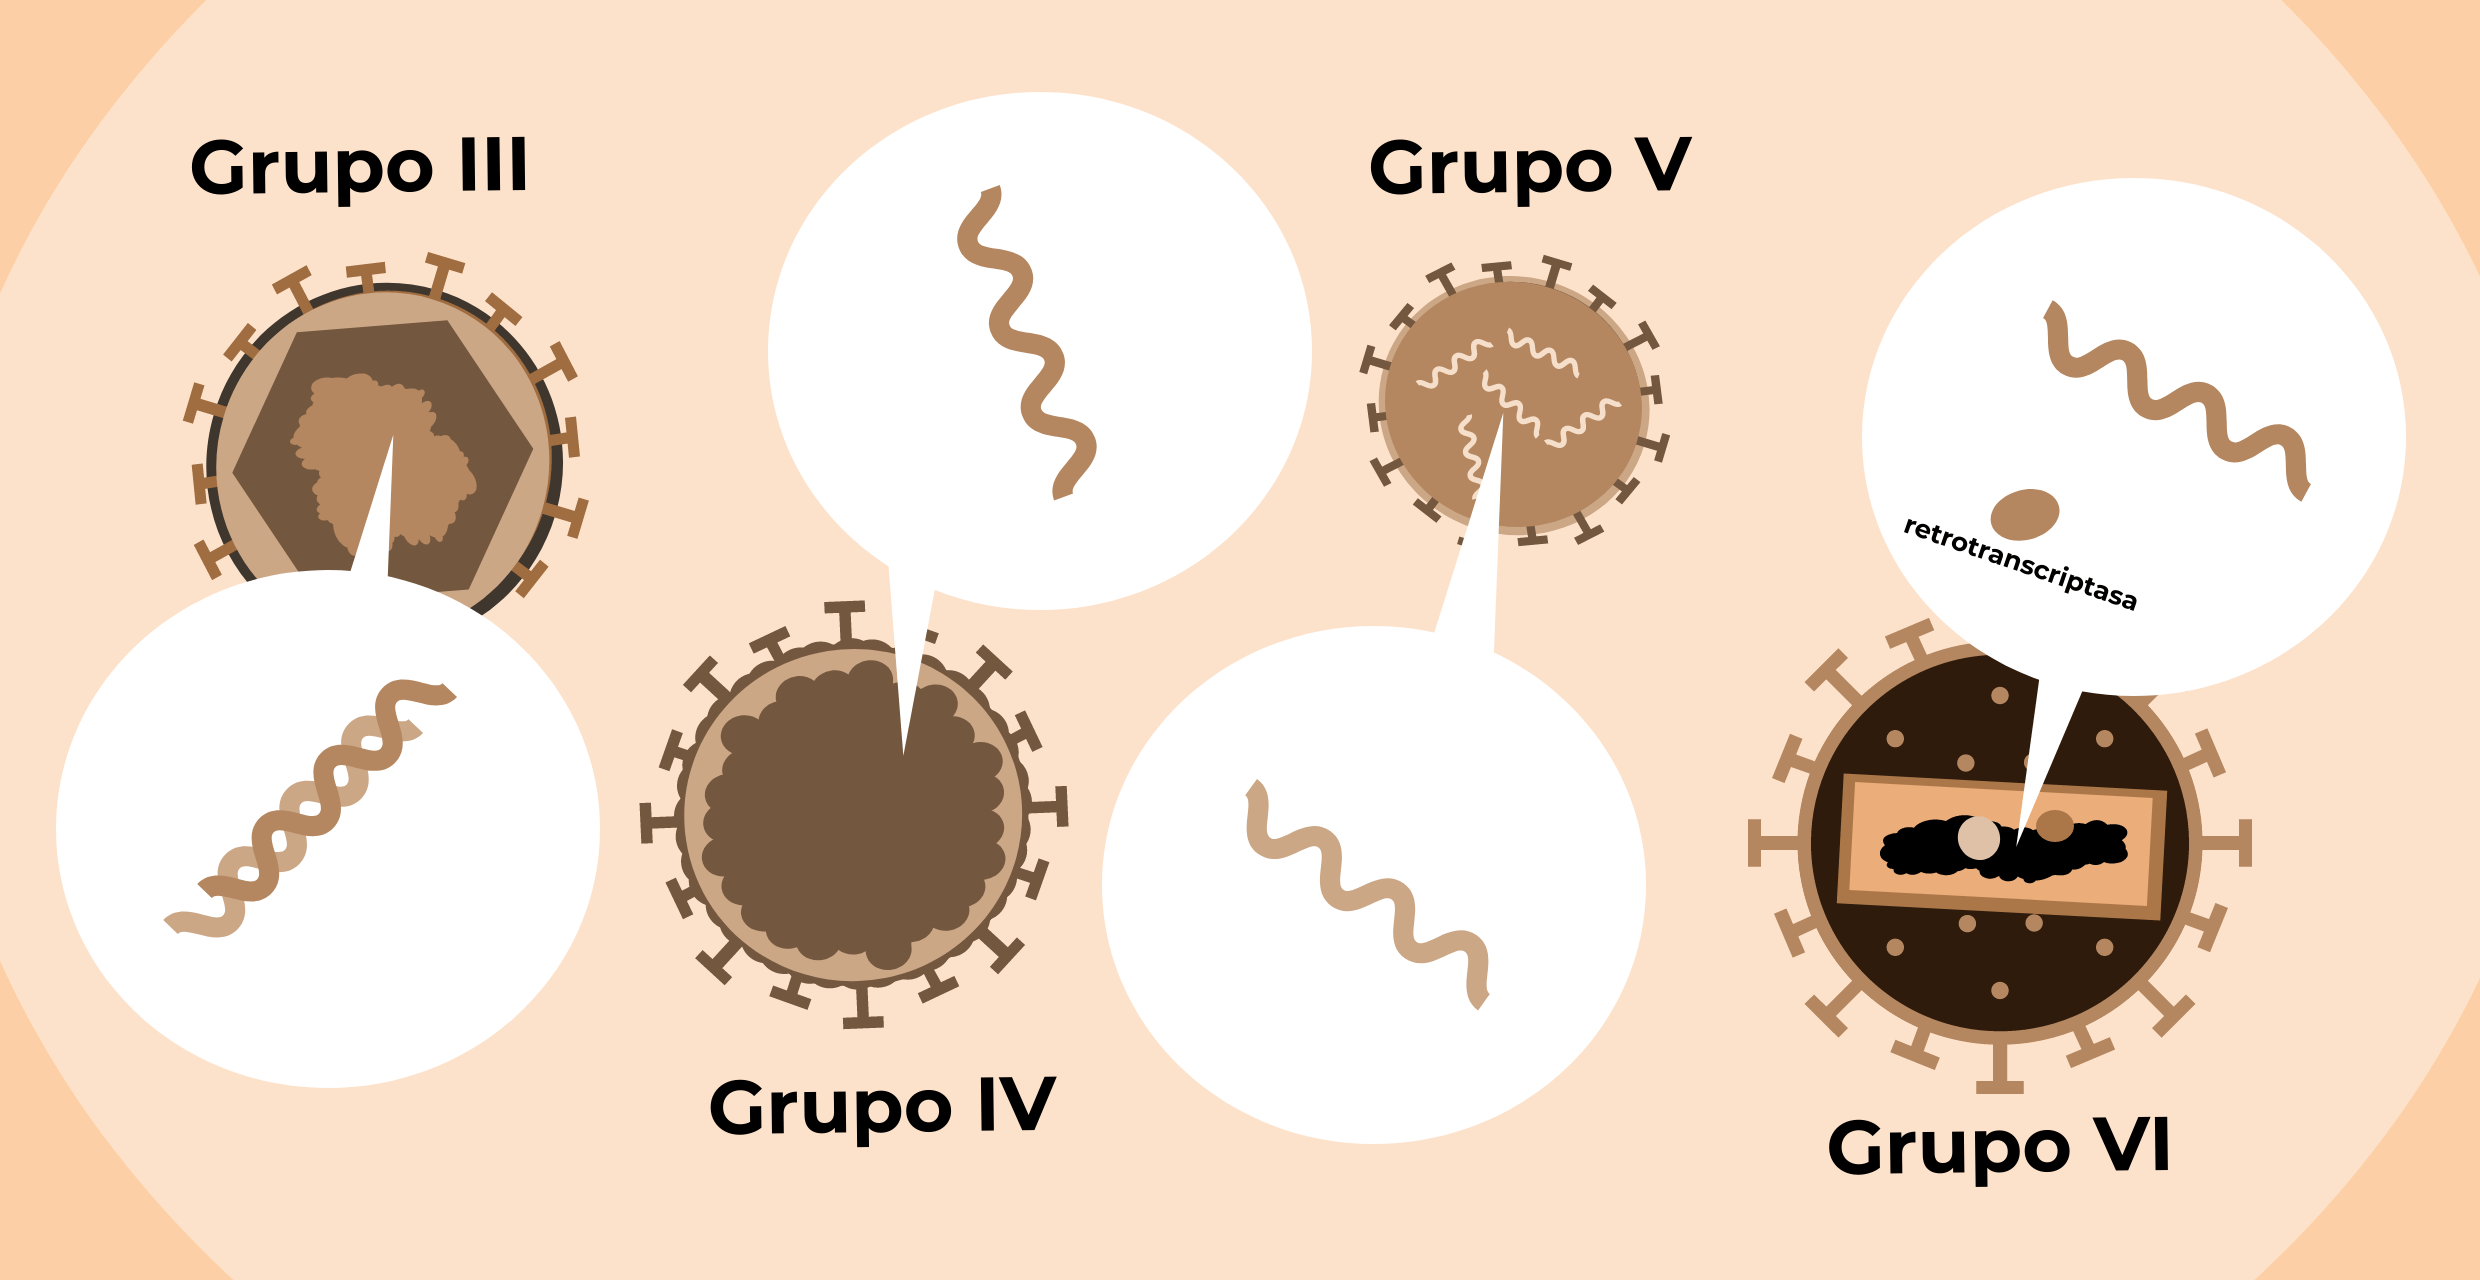 Virus ARN